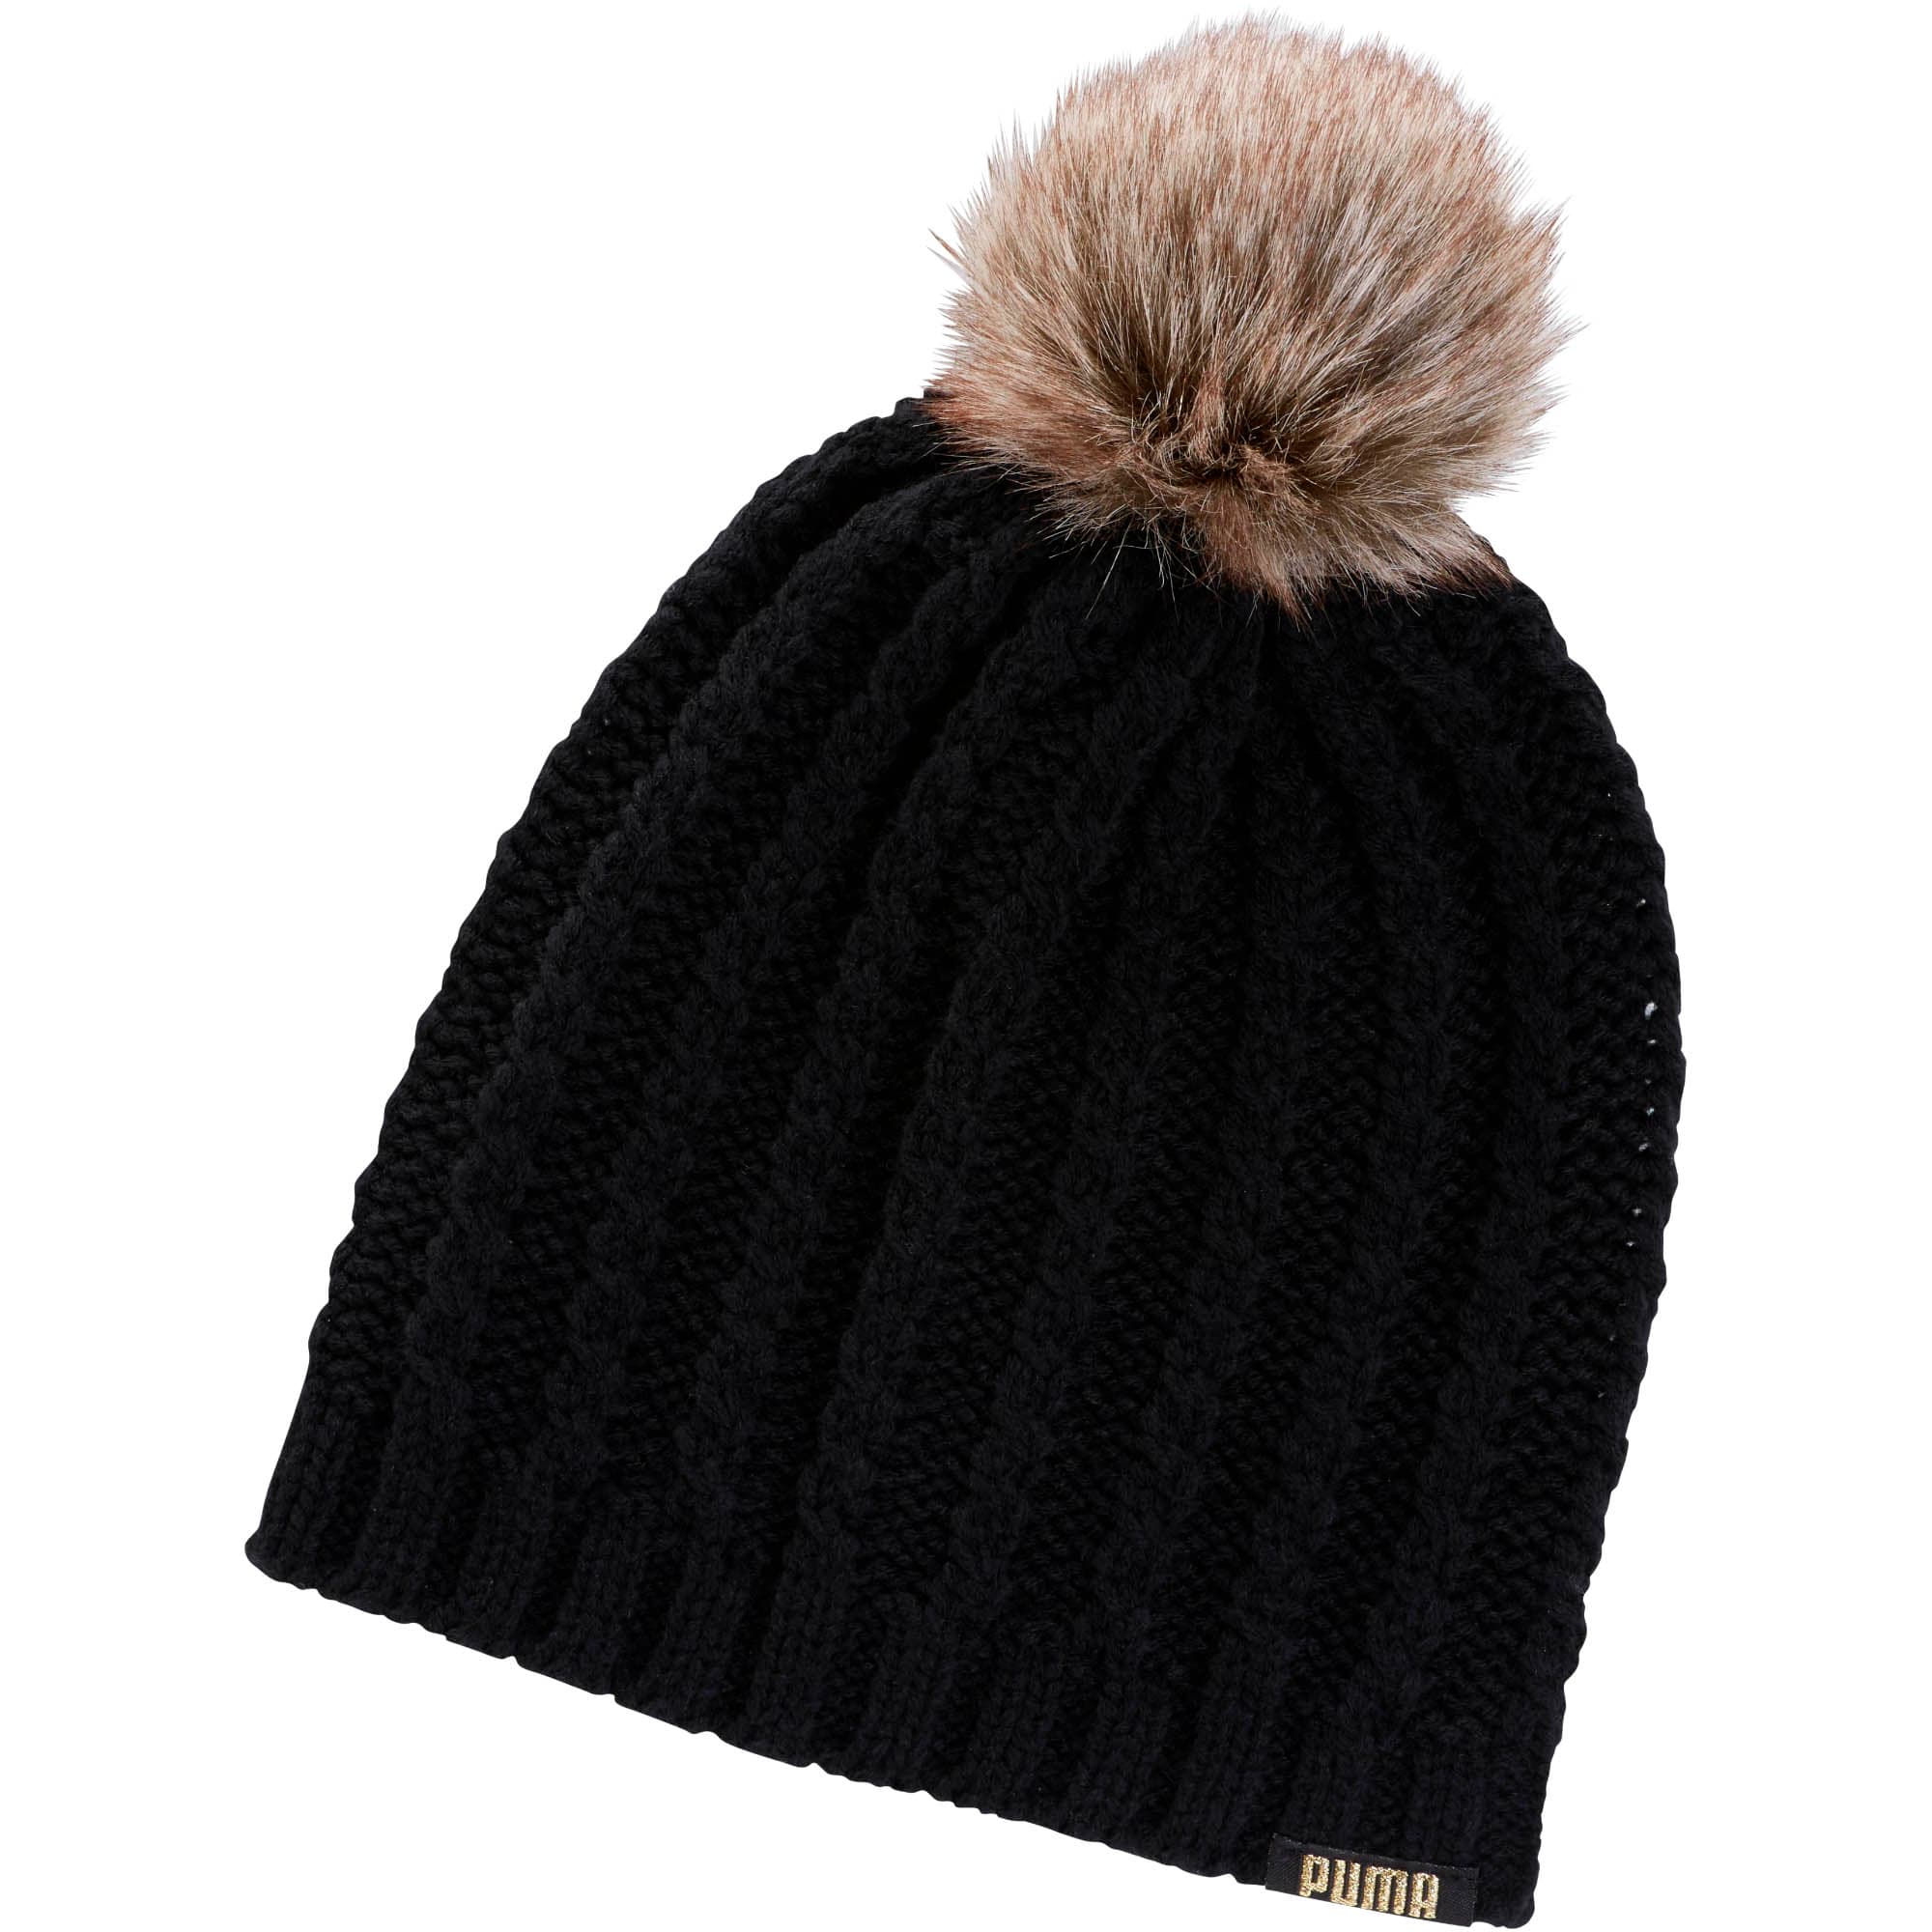 black wooly hat with fur pom pom